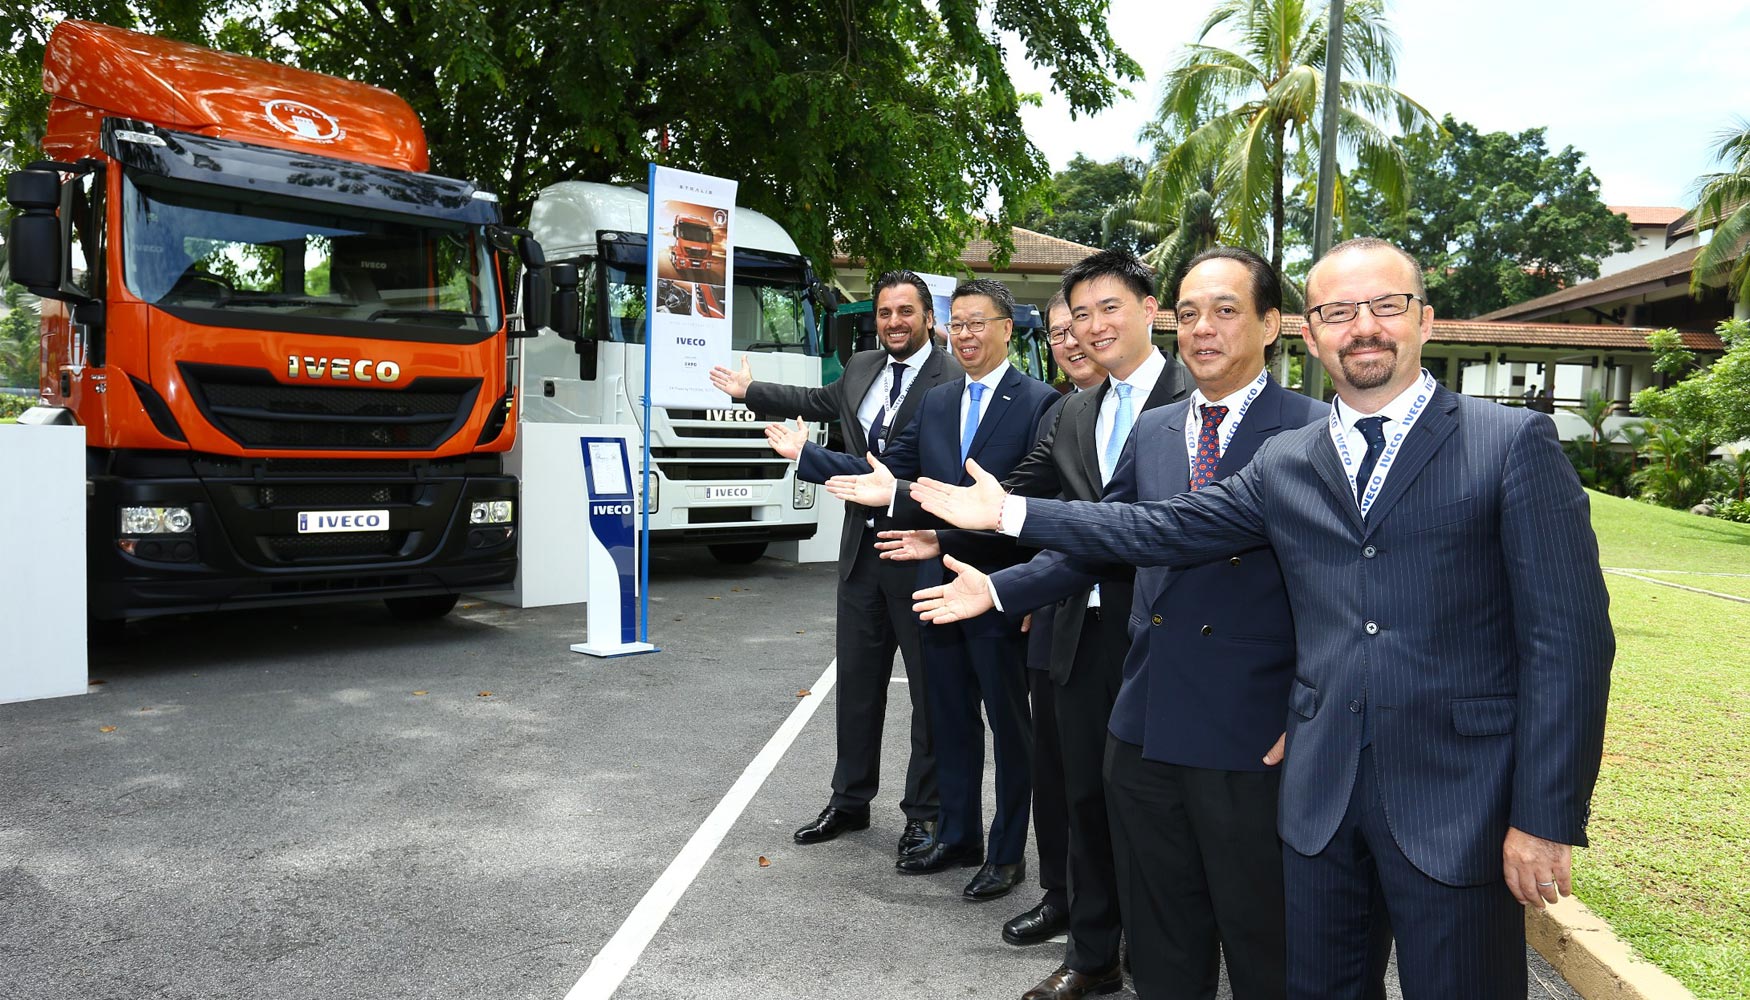 Iveco comercializar toda su gama de vehculos industriales y comerciales en Malasia